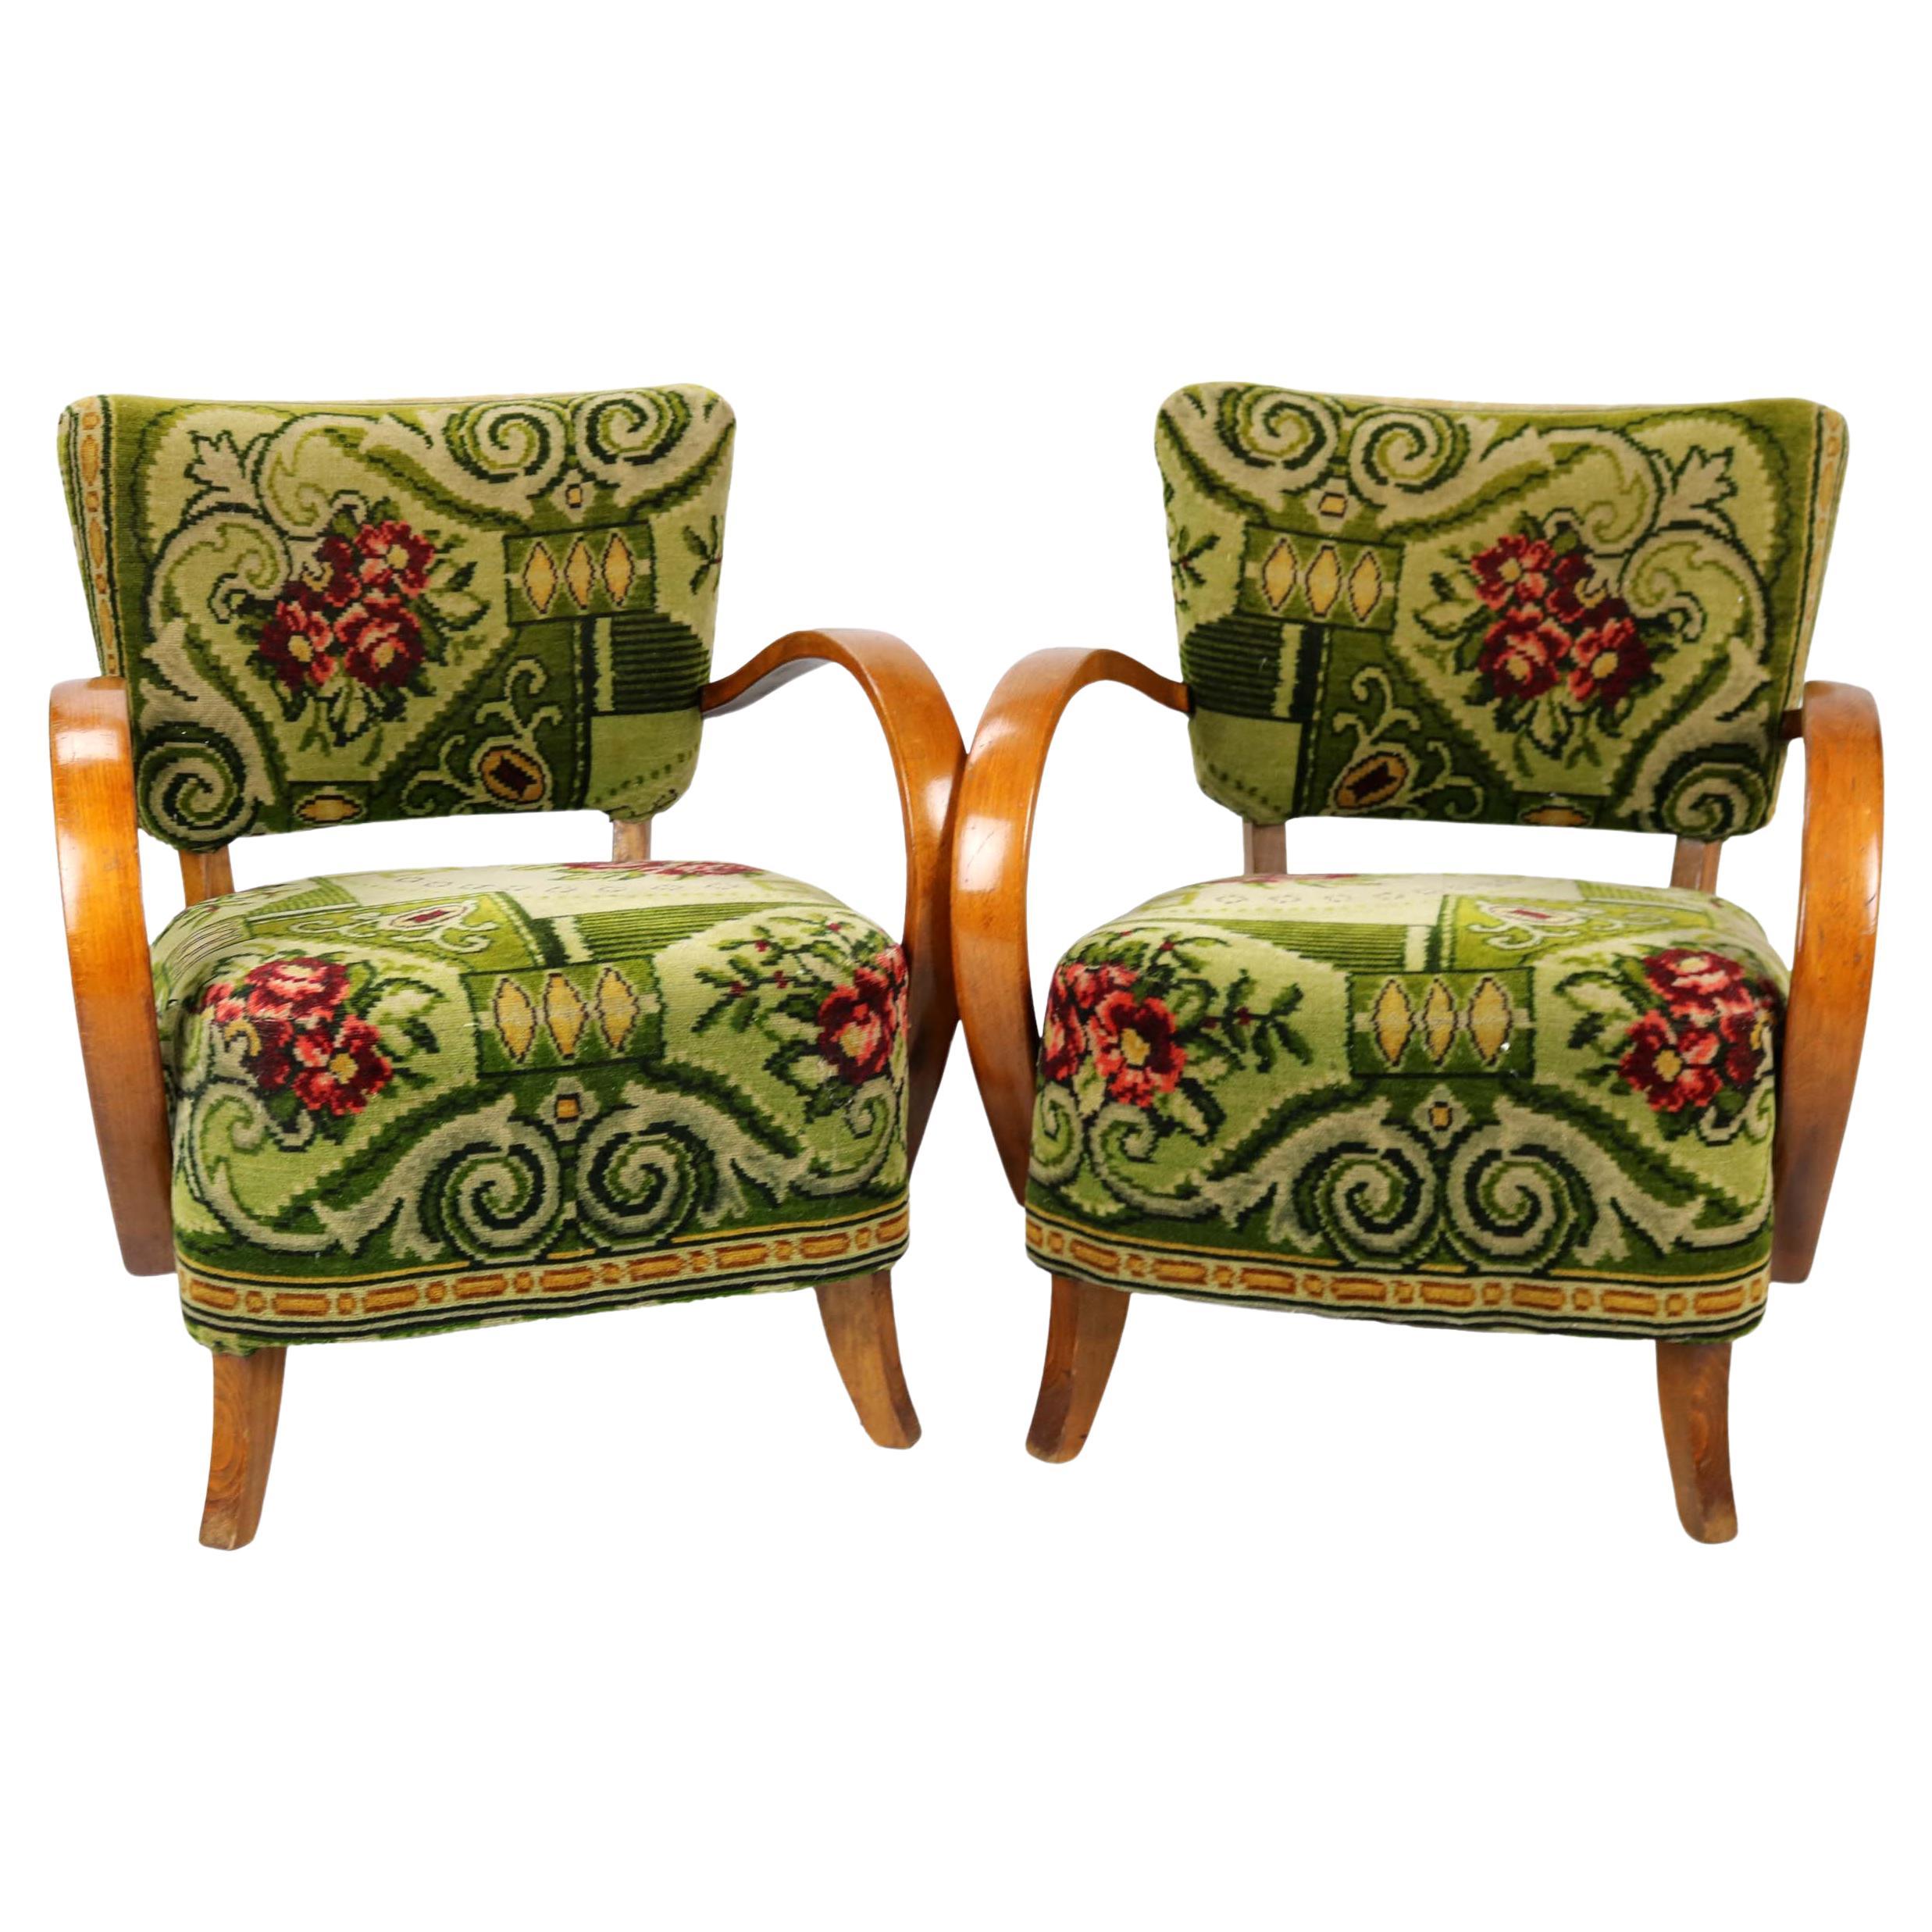 Ce magnifique ensemble de fauteuils Art déco à motifs floraux rehaussera de sa beauté et de son savoir-faire toute salle de séjour ou jardin d'hiver. Les fauteuils ont été conçus par le célèbre designer tchèque Jindrich Halabala. Les fauteuils ne